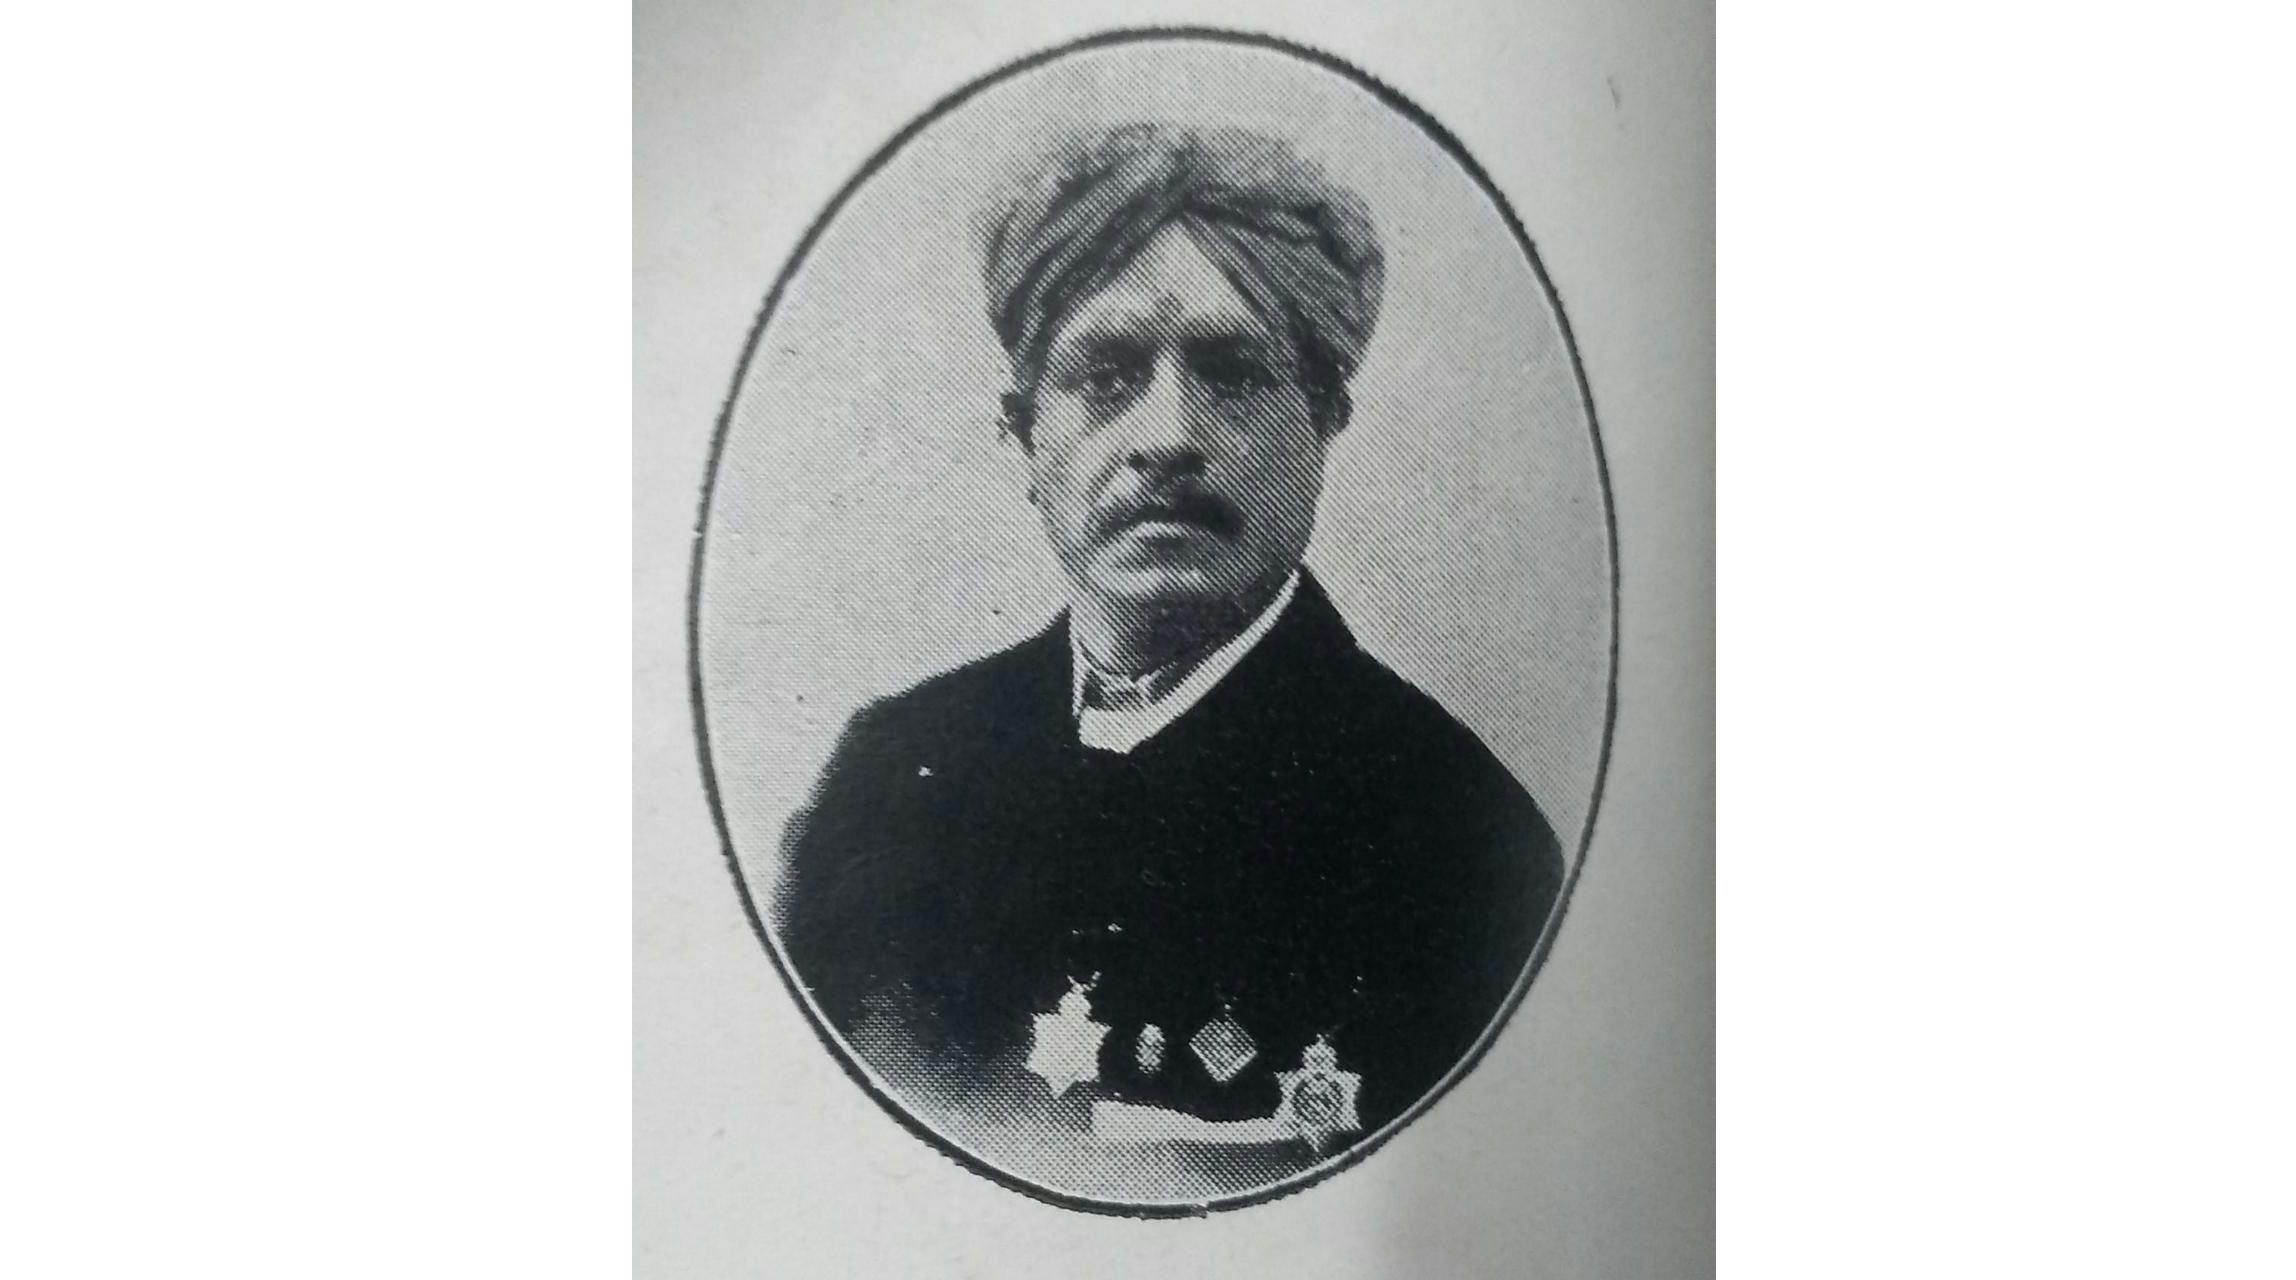 Yeshwantrao Harishchandra Desai